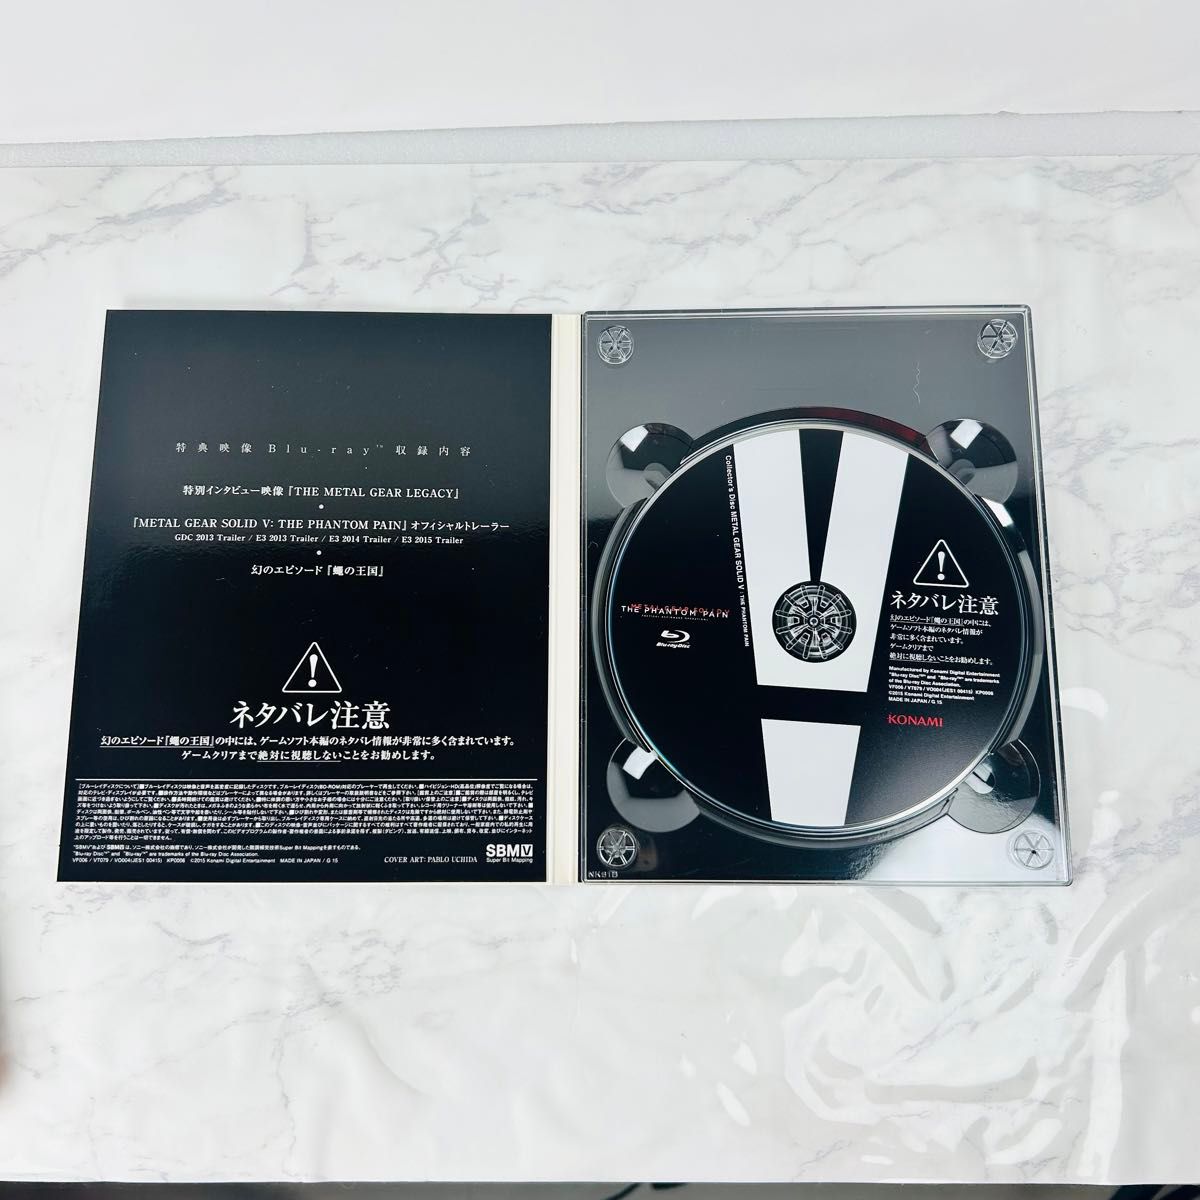 PS3 メタルギアソリッド5 ファントムペイン スペシャルエディション